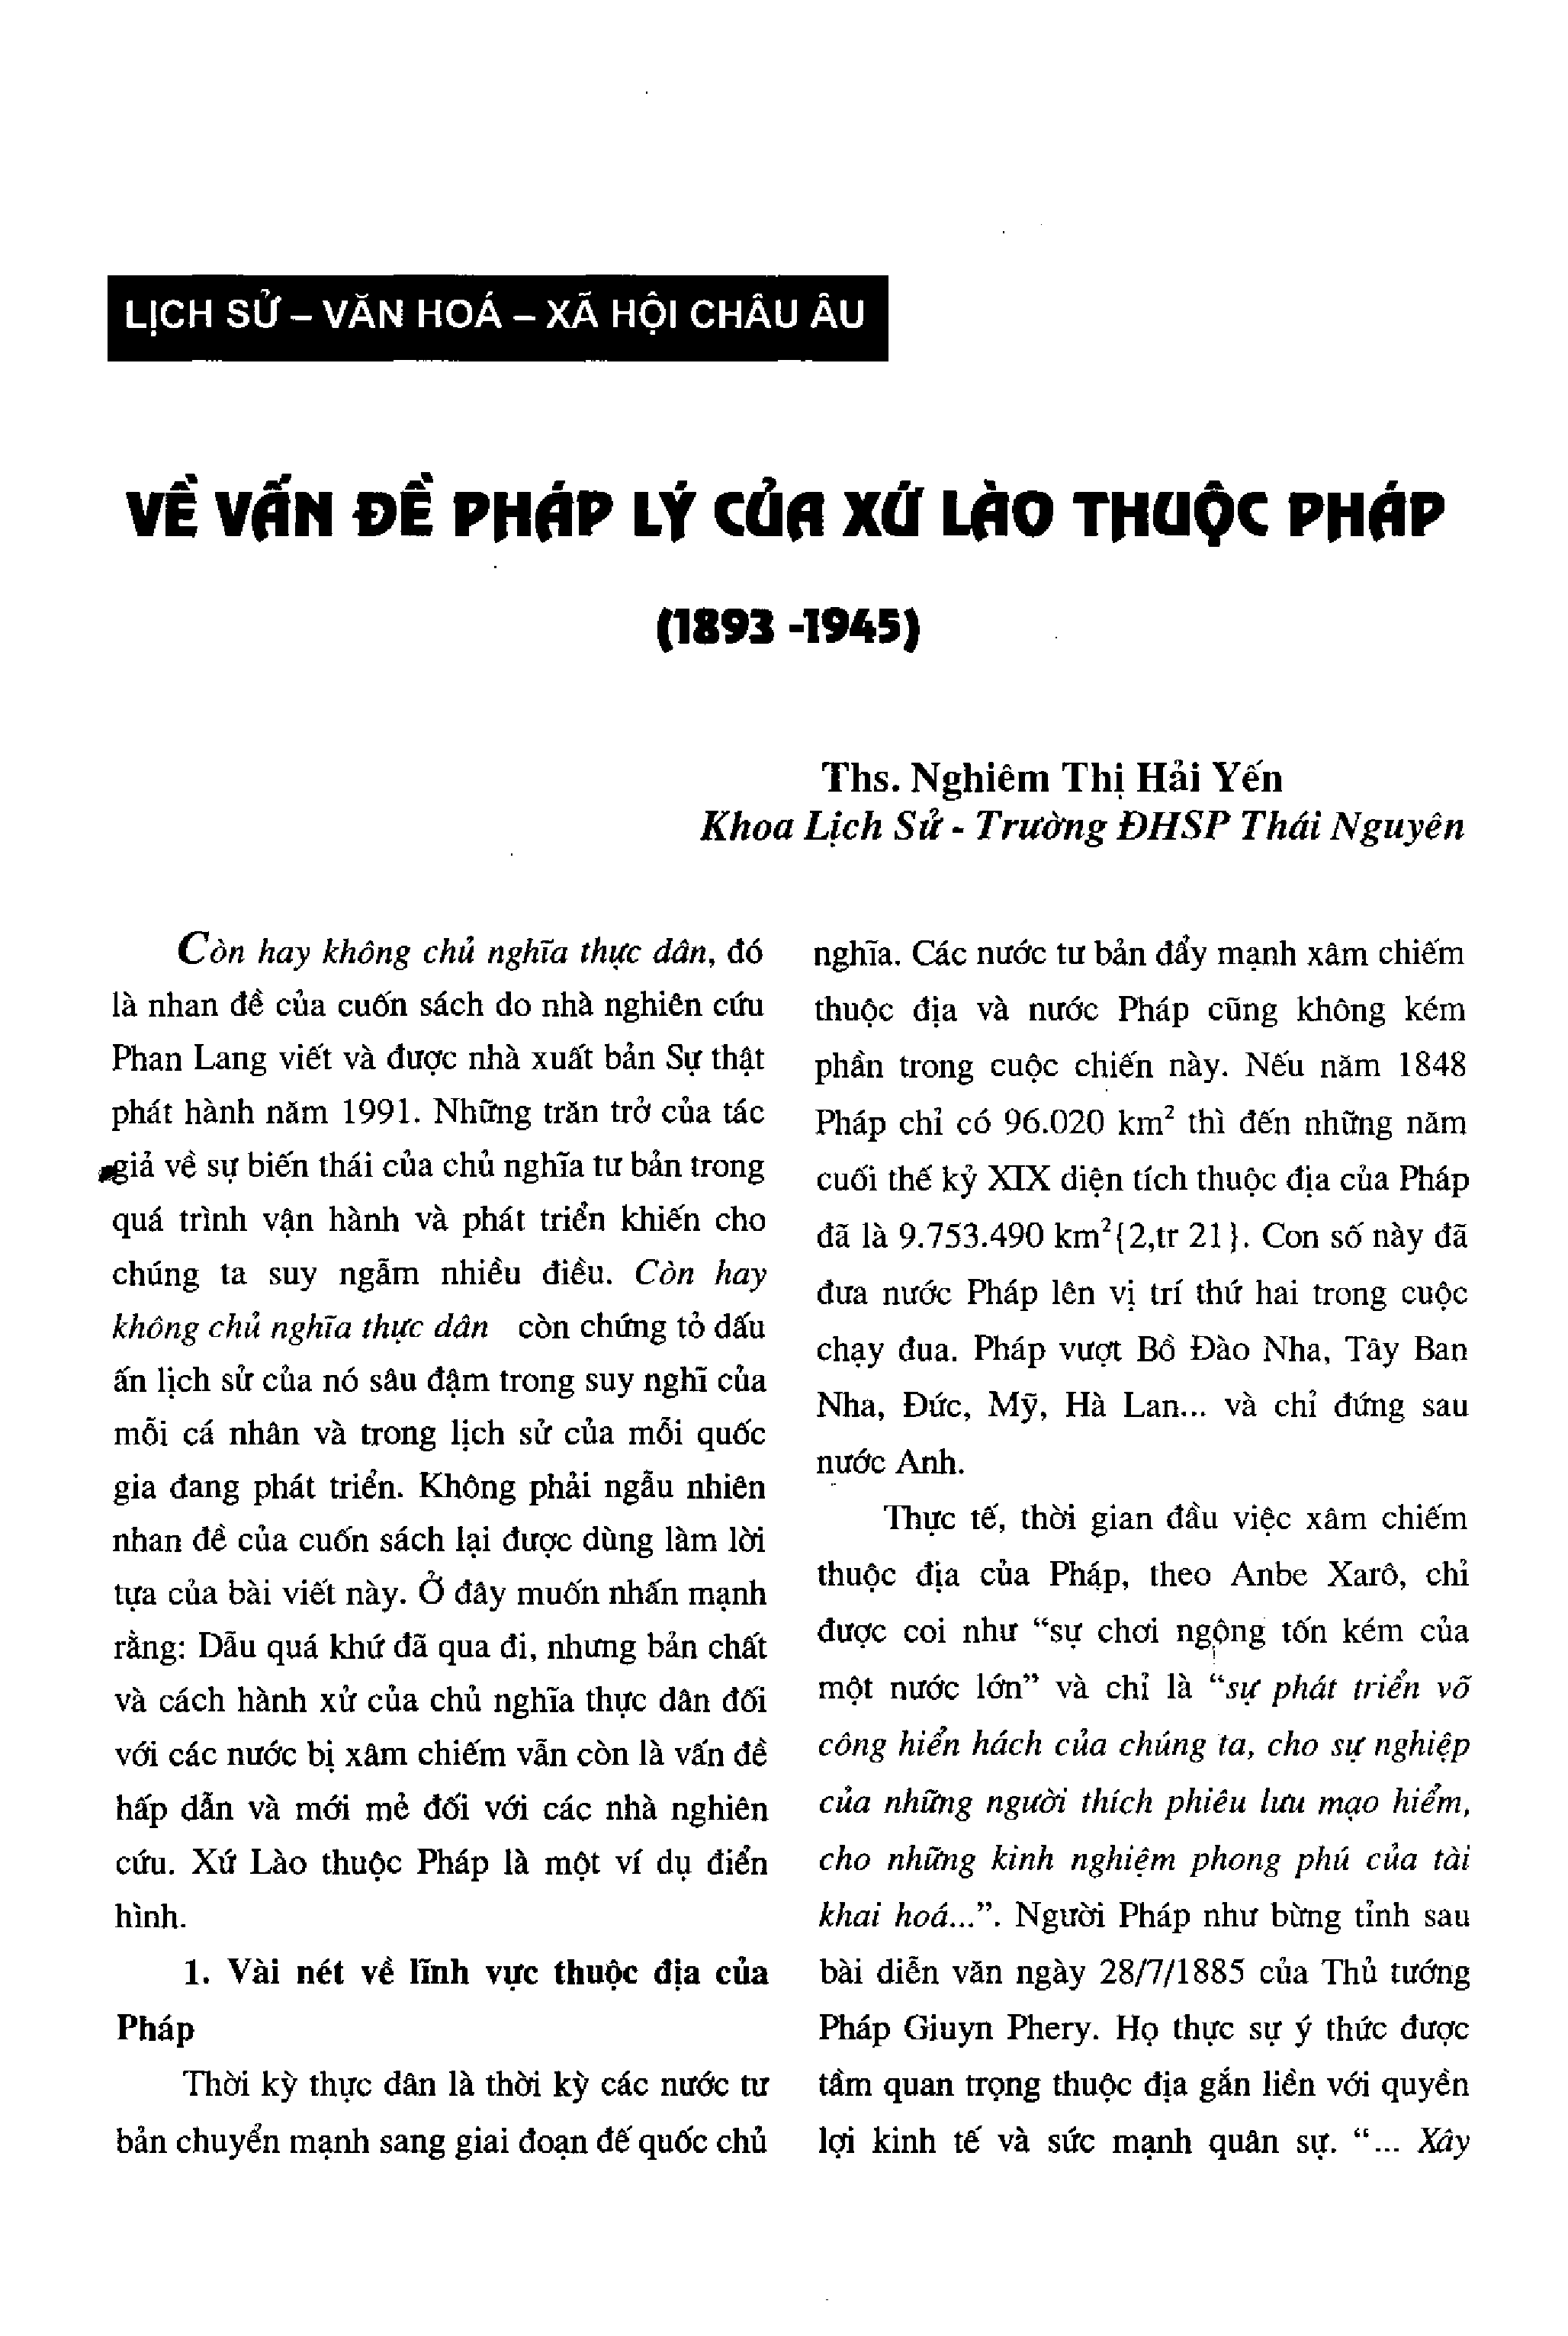 Về vấn đề pháp lý của xứ Lào thuộc Pháp (1893-1945)